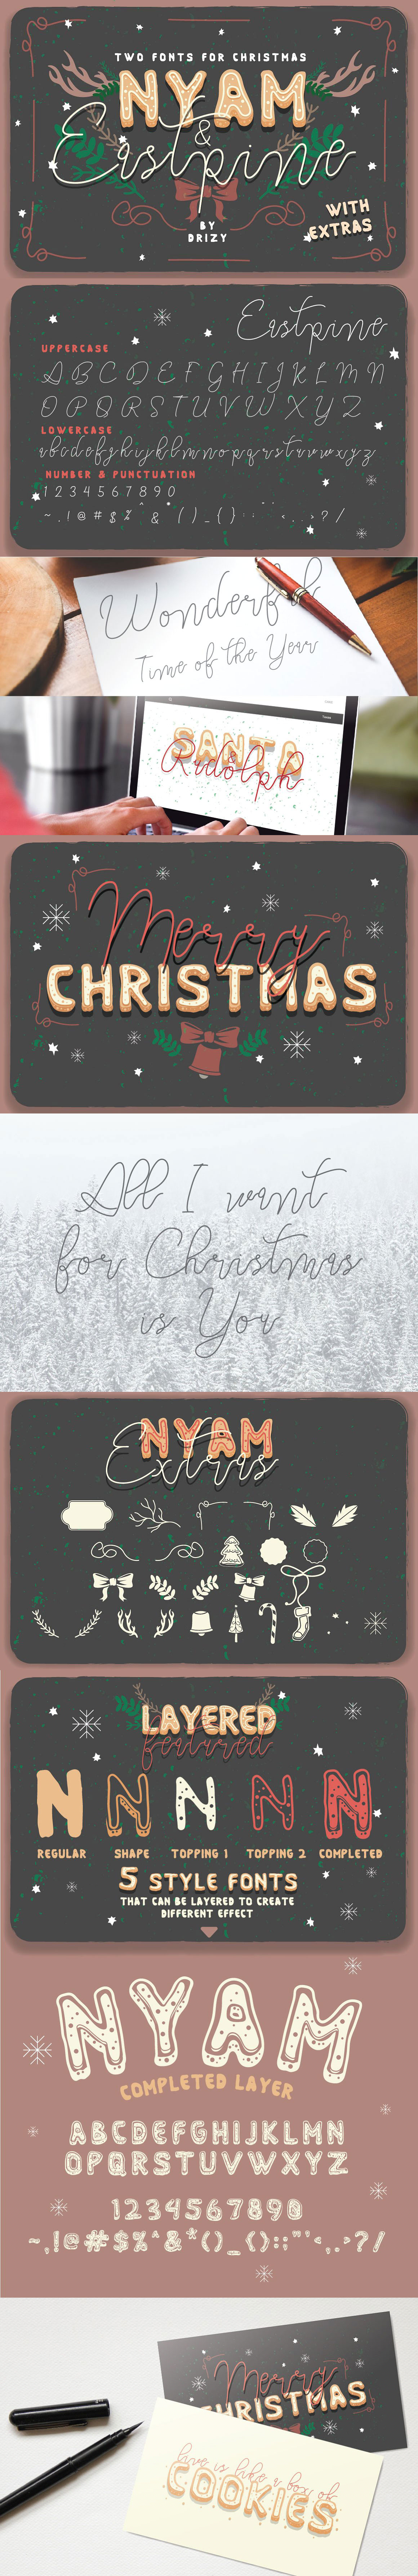 圣诞节节日特别字体打包下载 font-iamxk-com